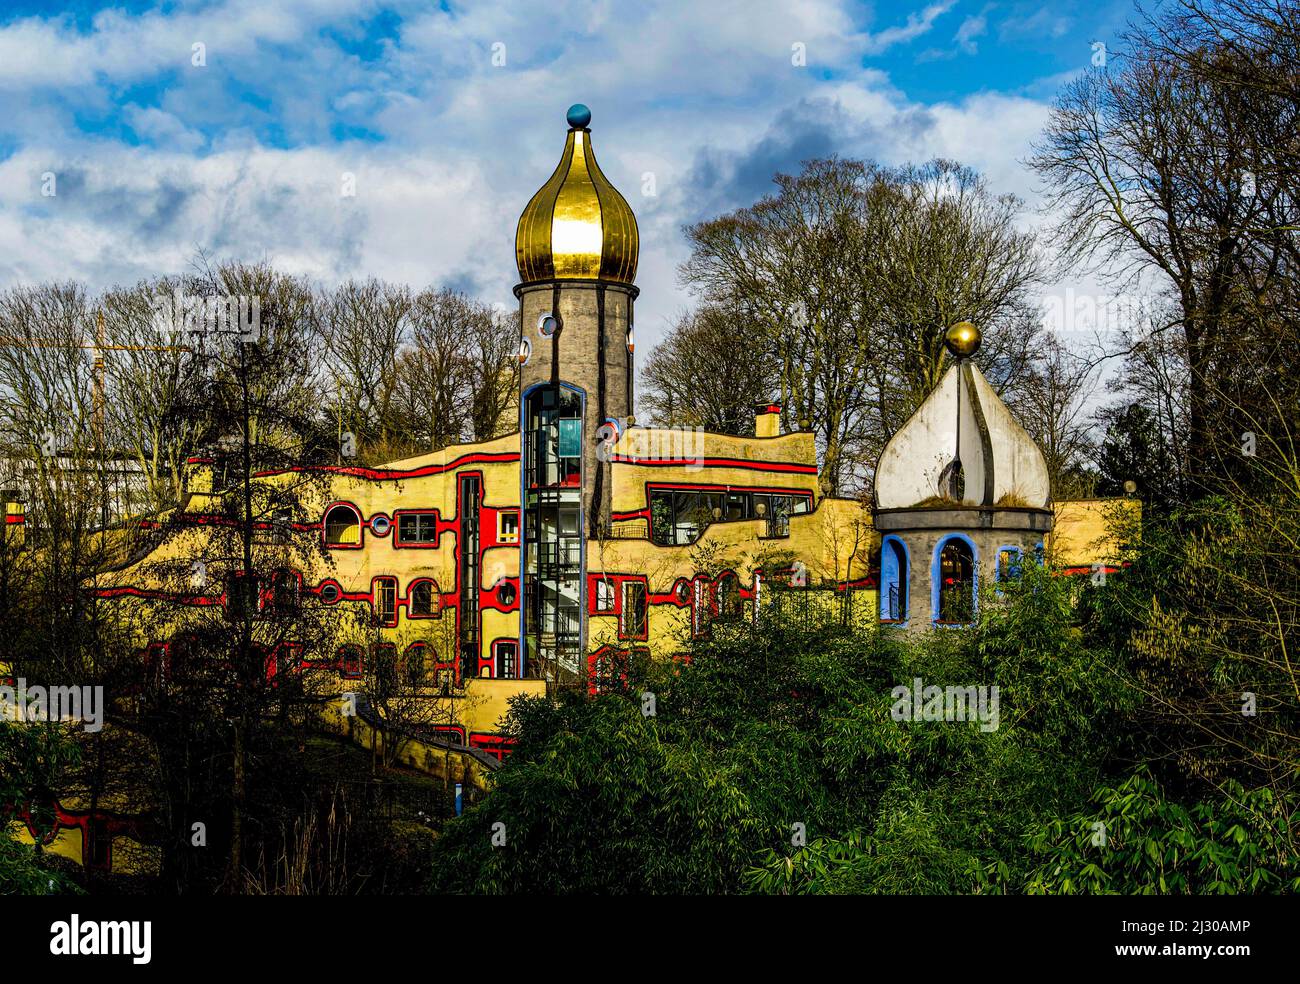 Hundertwasserhaus en el Grugapark en Essen, zona de Ruhr, Renania del Norte-Westfalia, Alemania Foto de stock